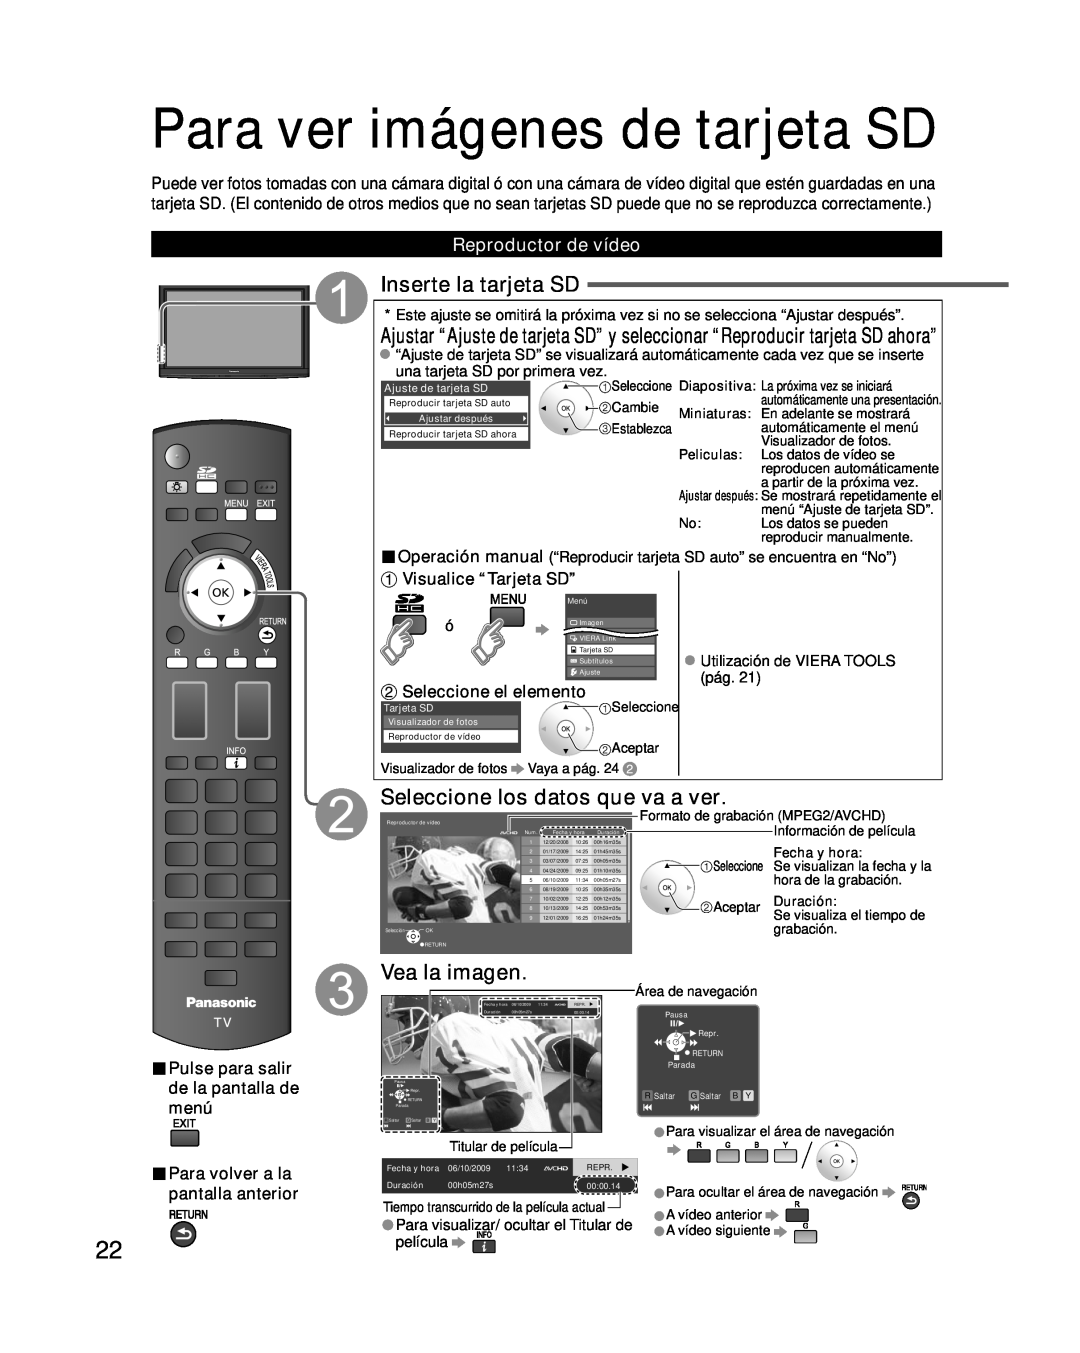 Panasonic TC-P50G10 Para ver imágenes de tarjeta SD, Inserte la tarjeta SD, Seleccione los datos que va a ver, menú 